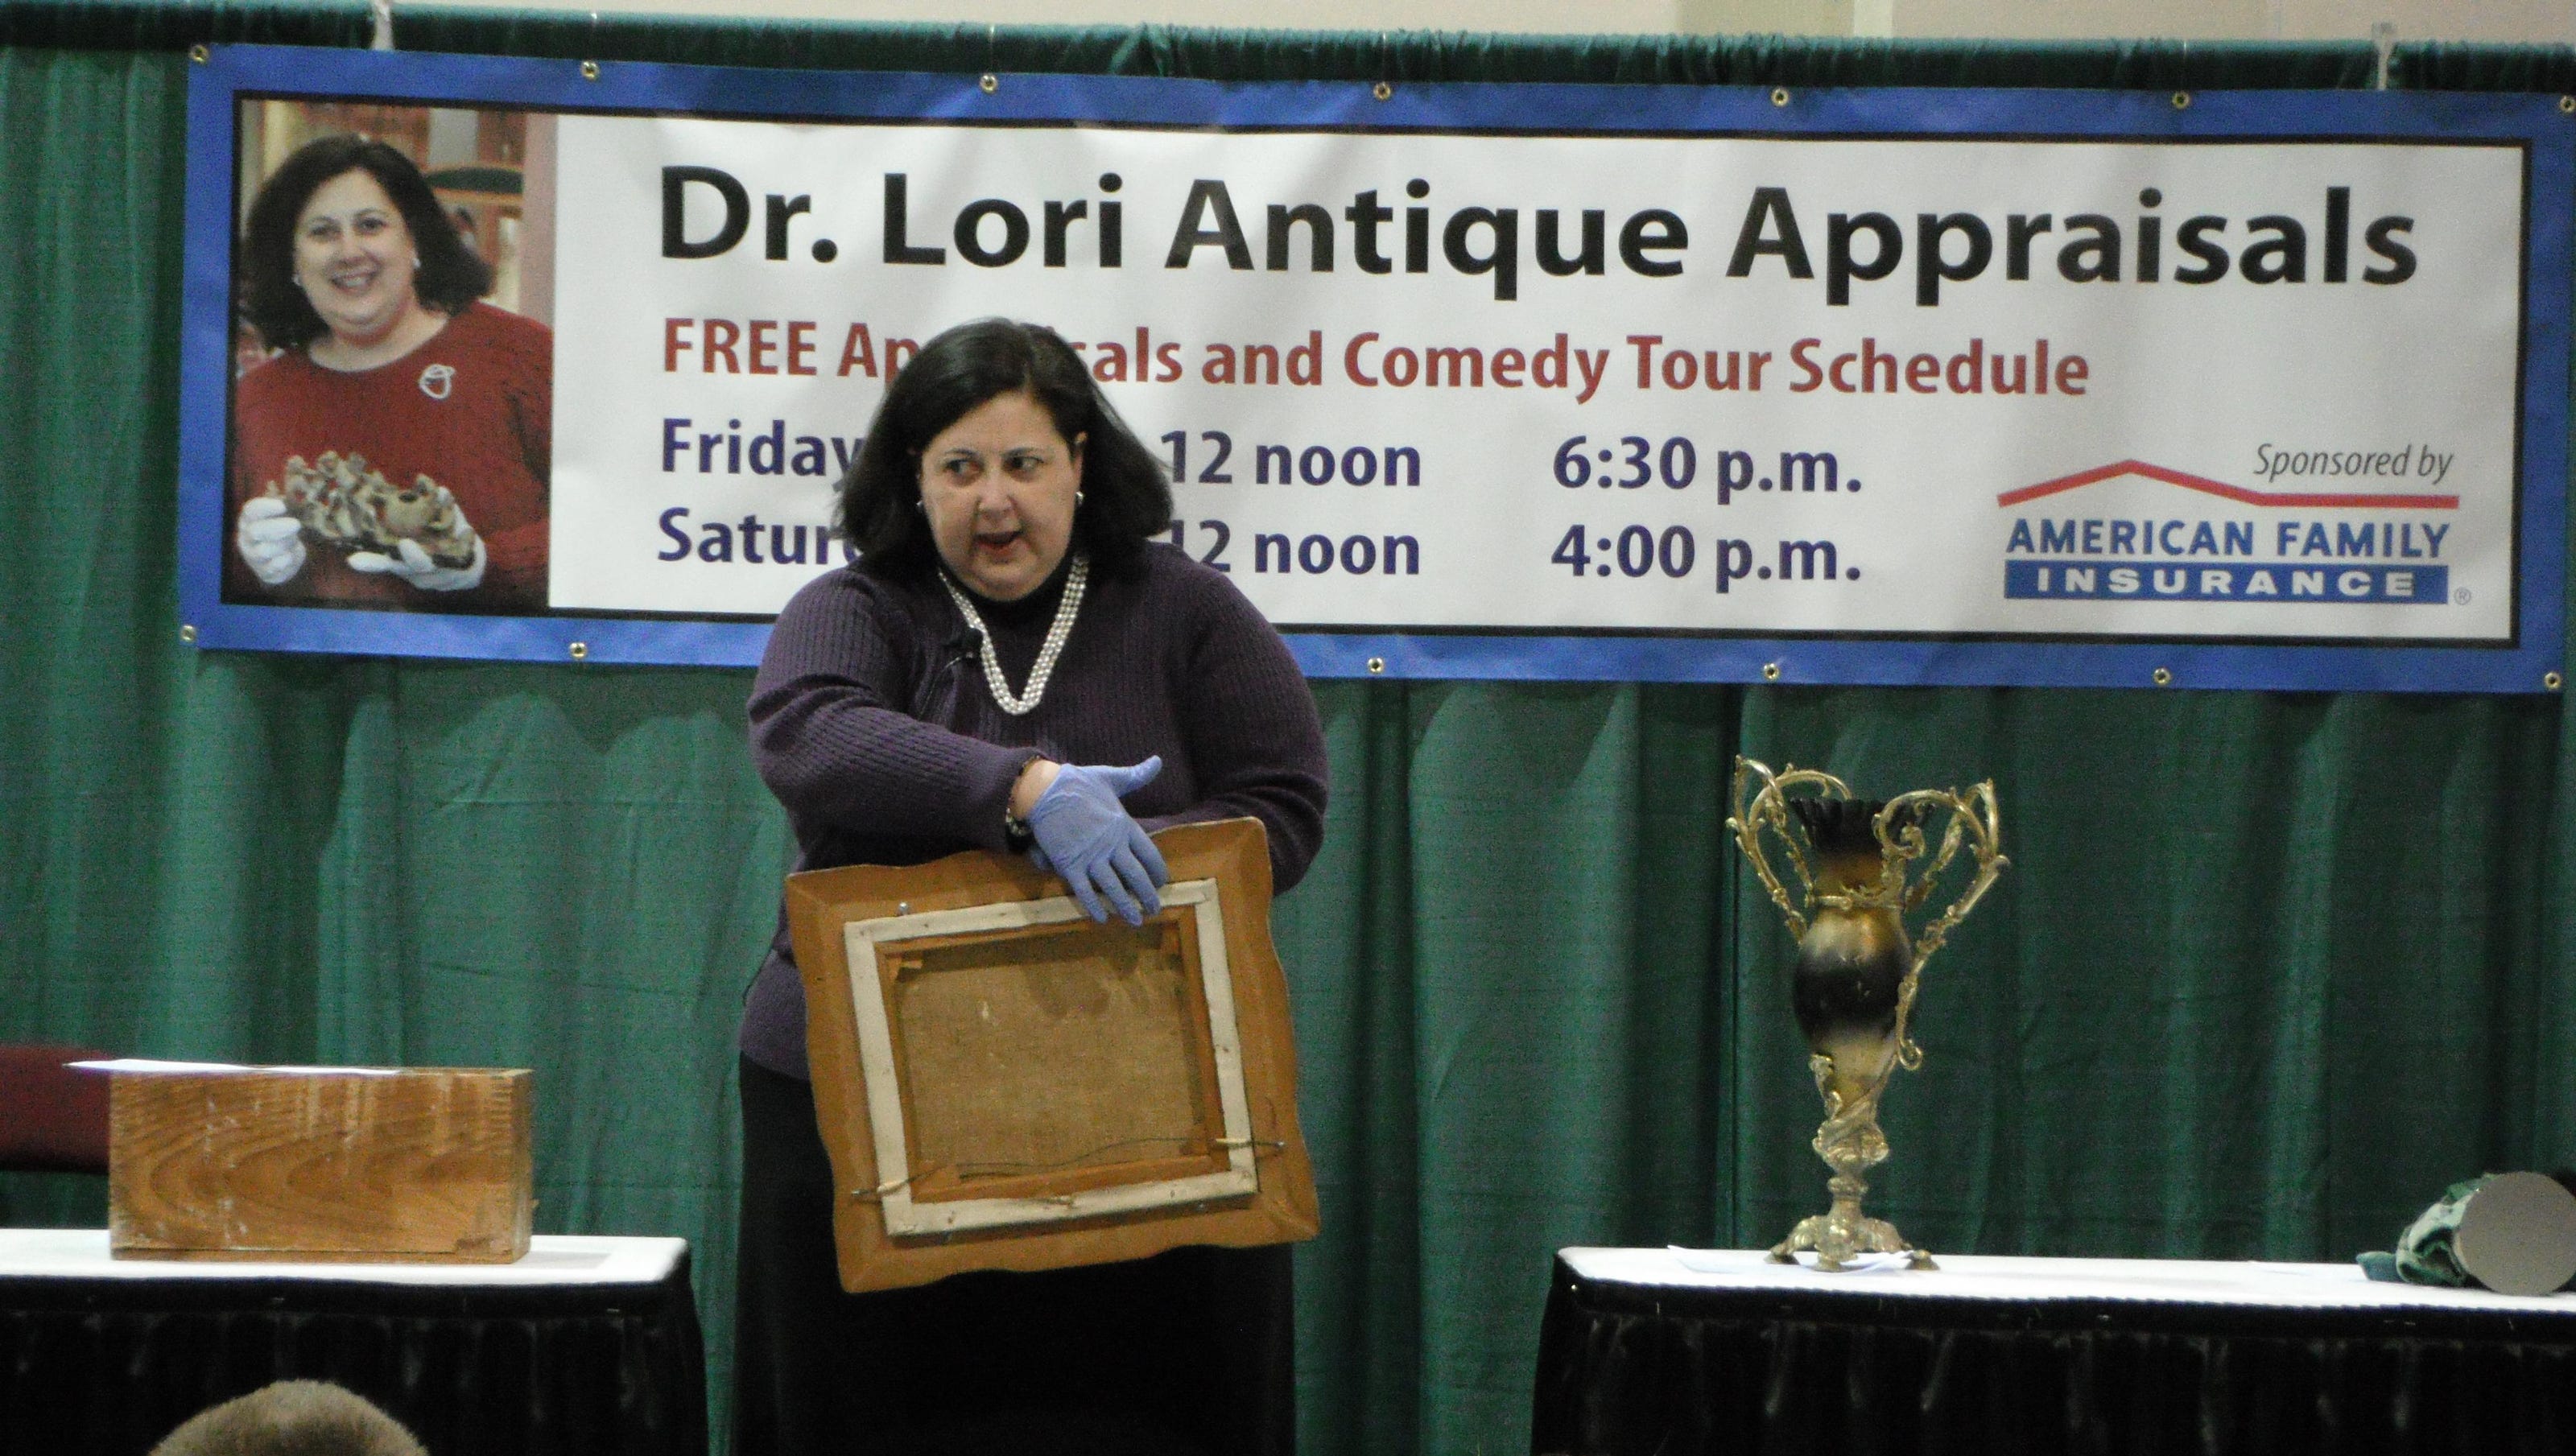 Let Dr. Lori appraise your attic treasures at Novi show